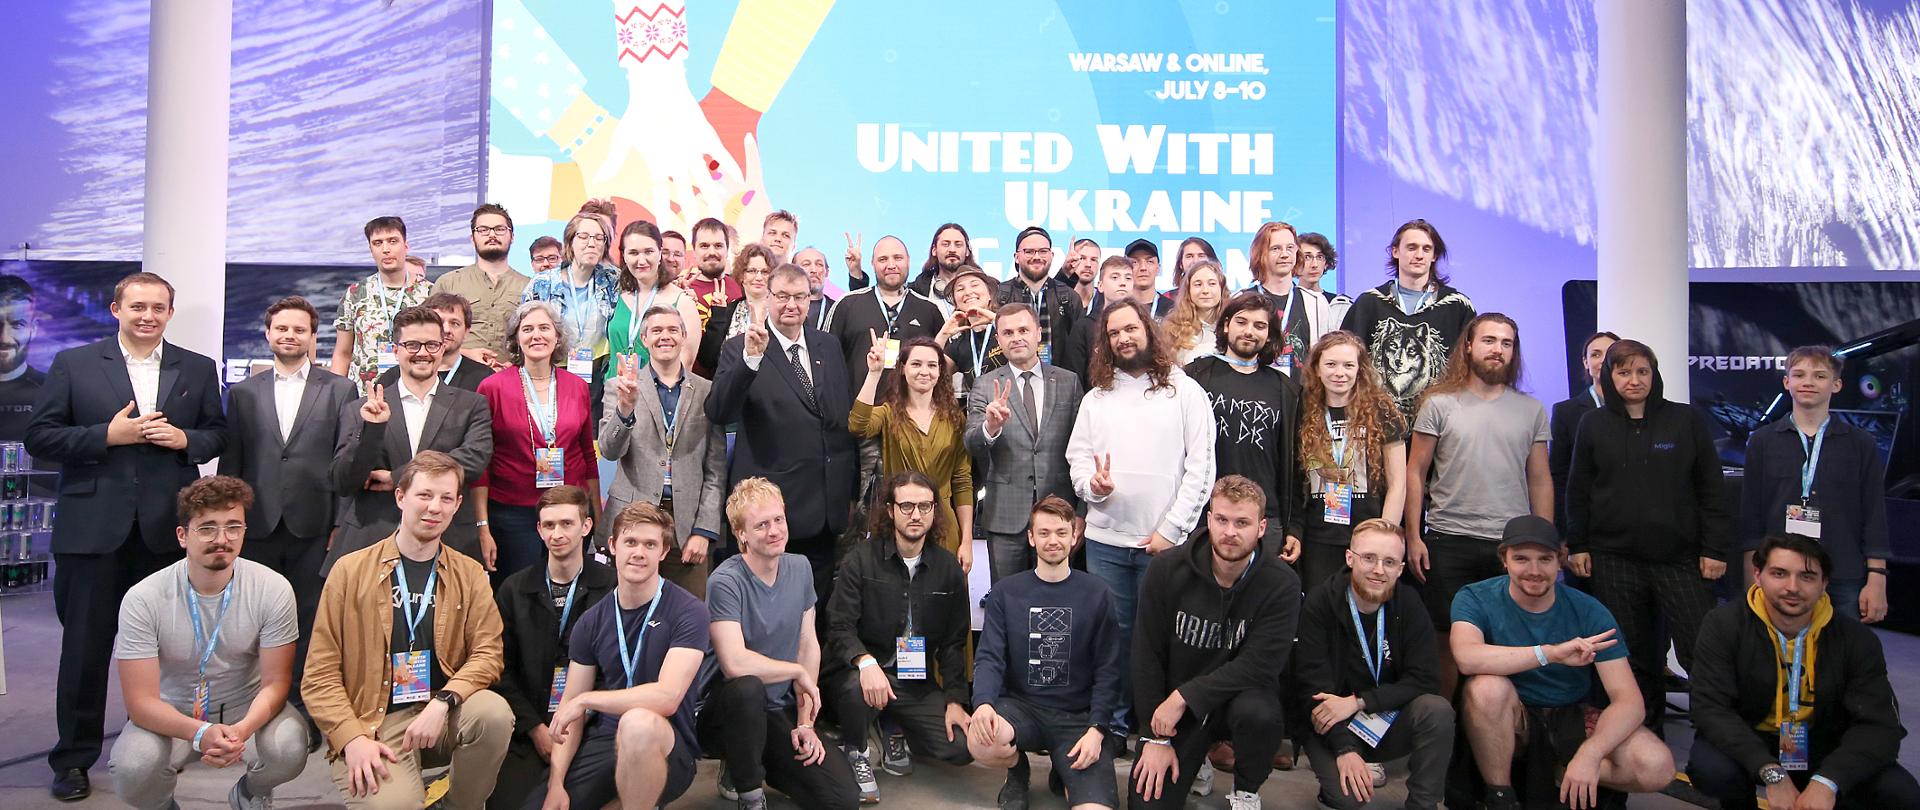 Zdjęcie grupowe z uczestnikami na tle planszy z napisem United with Ukraine game jam